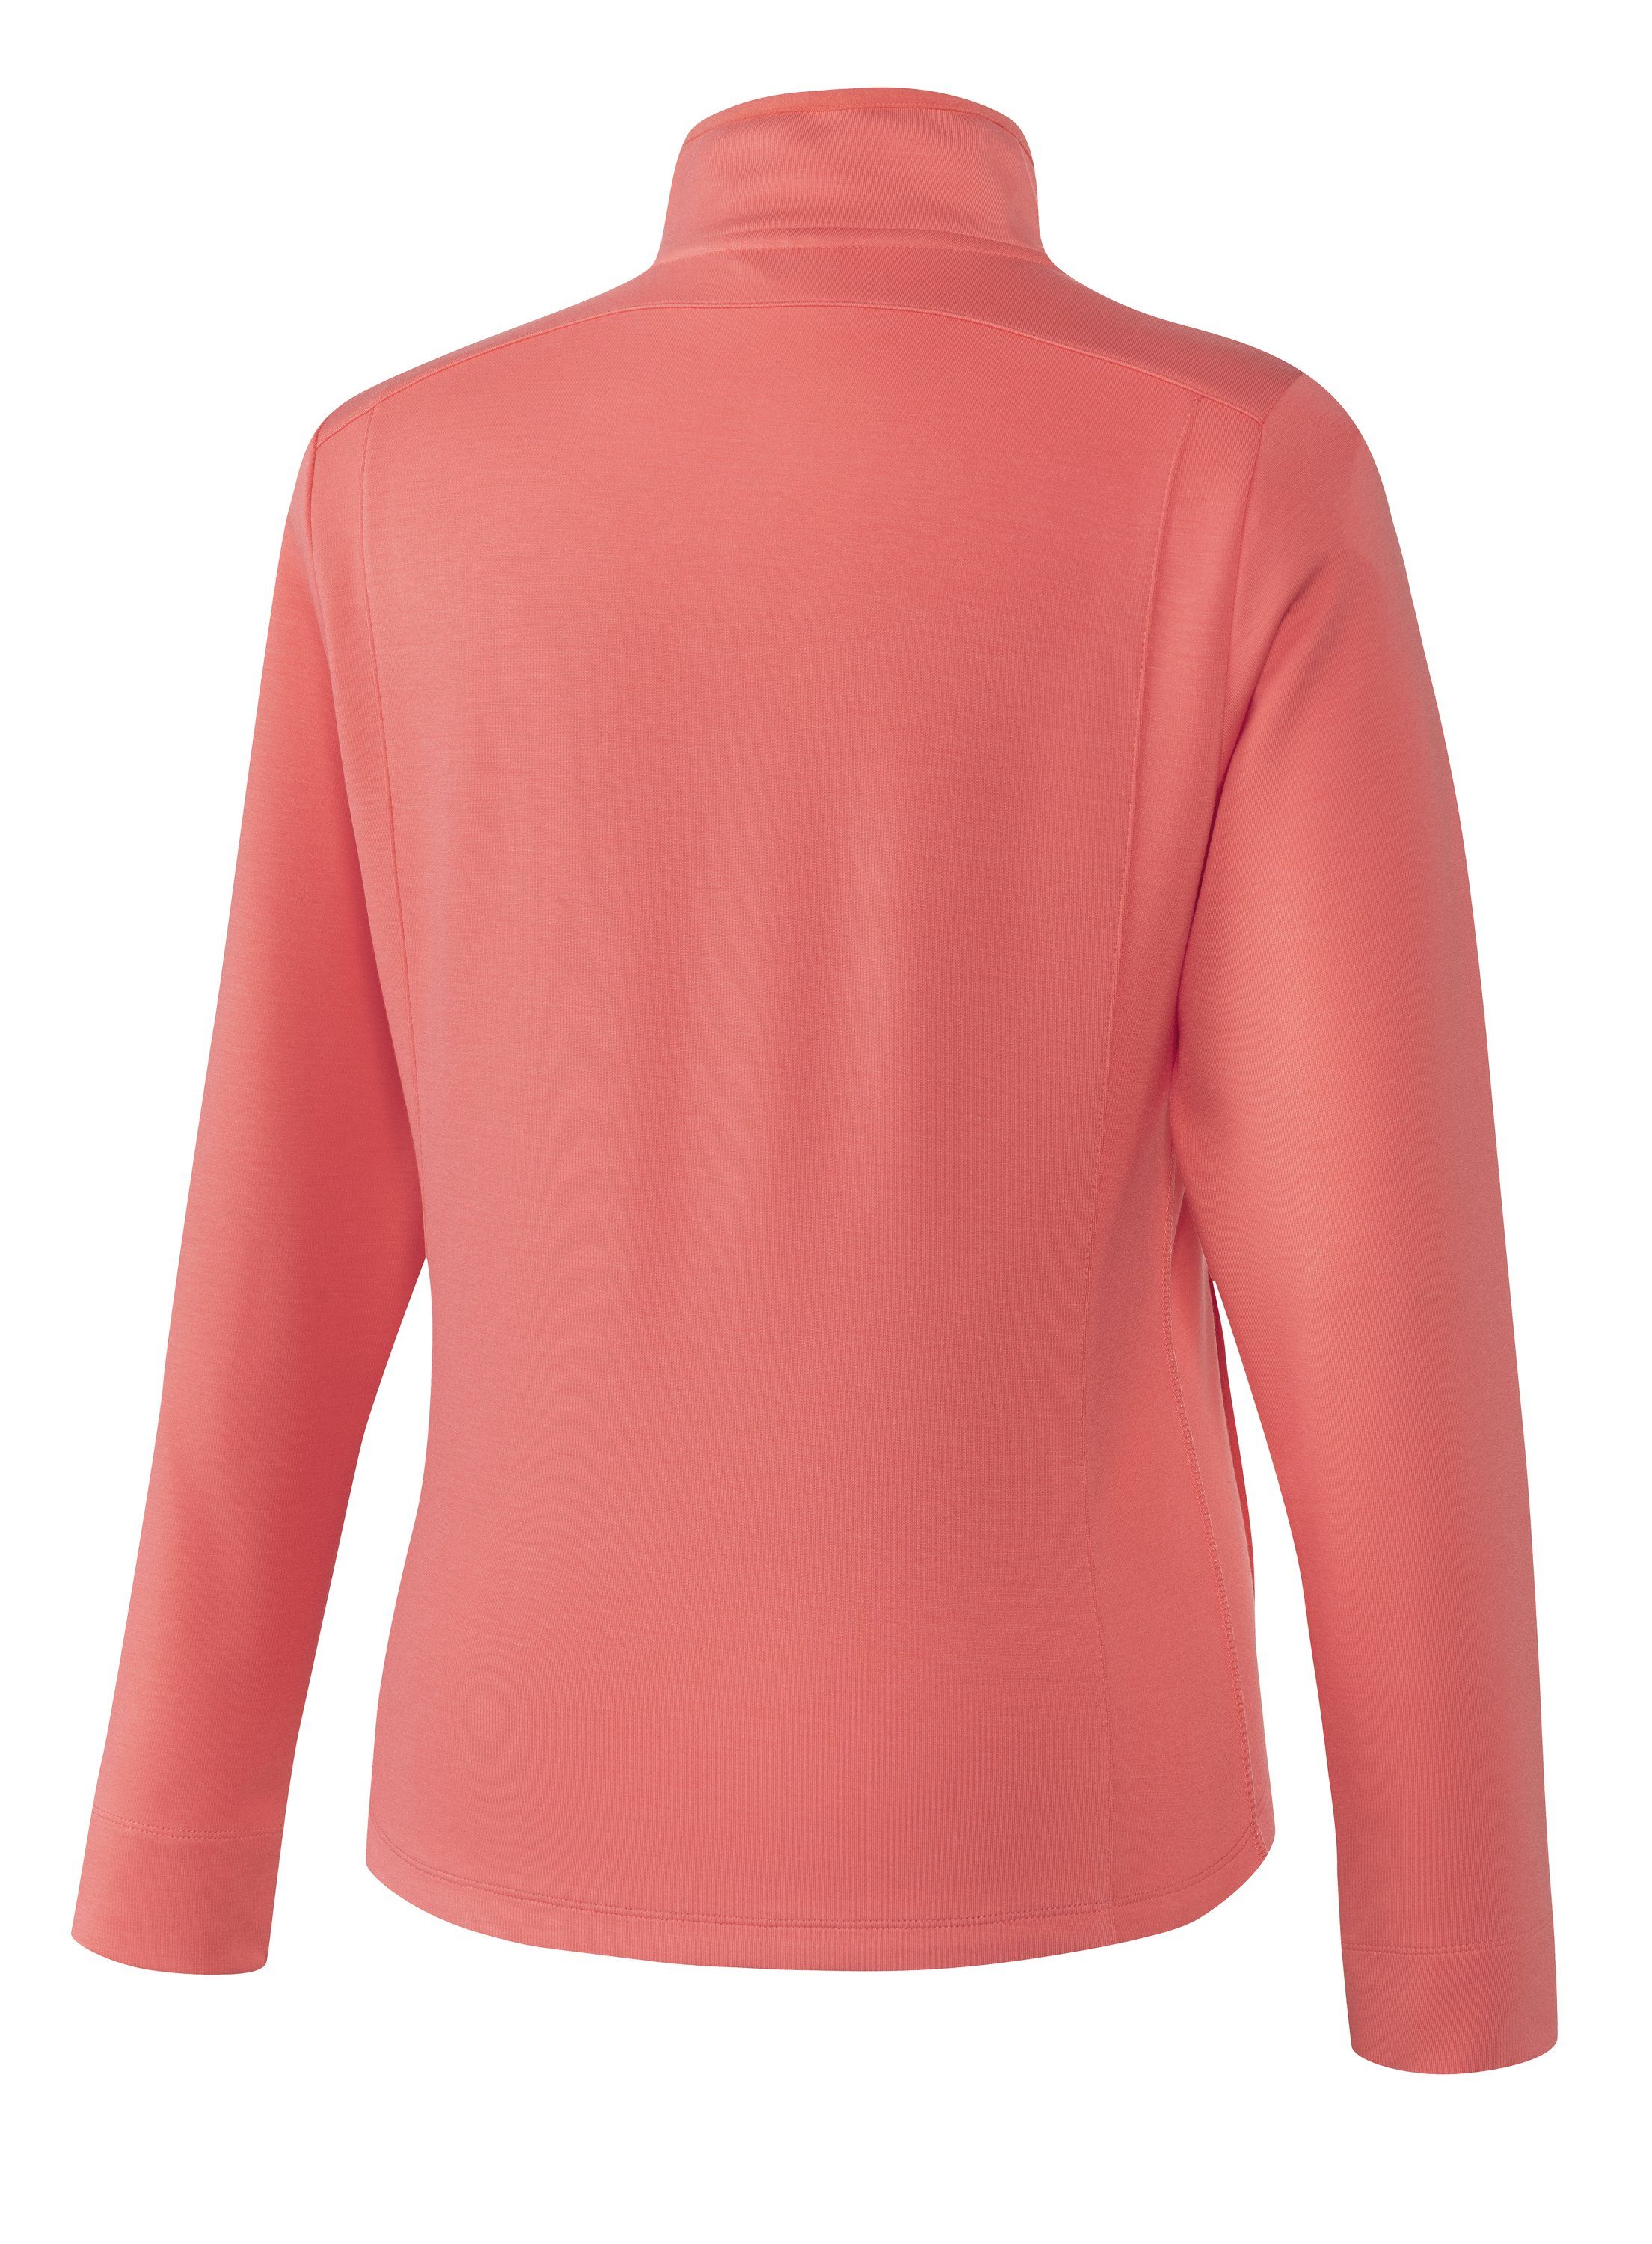 Joy Sportswear Trainingsjacke Jacke MALA pink coral